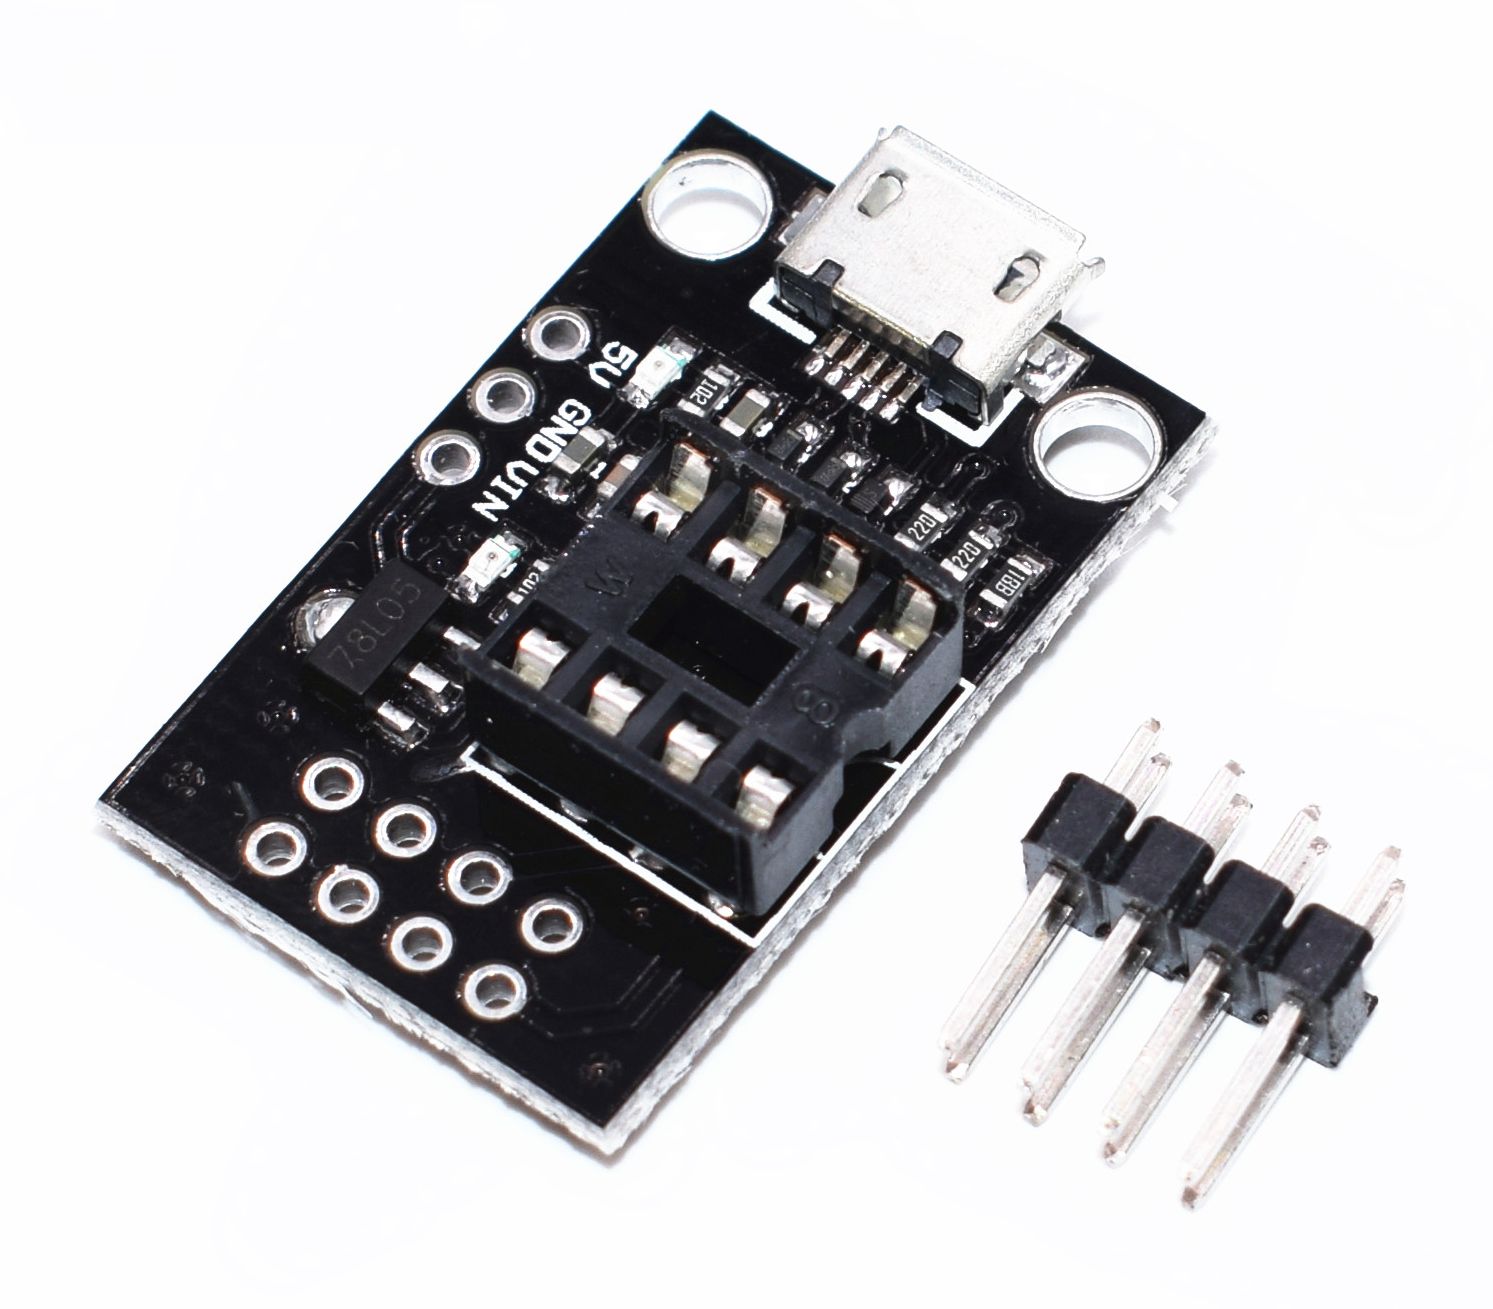 ATmel ATTINY13-25-45-85 AVR Microcontroller programmeer platform bovenkant schuin met header pins